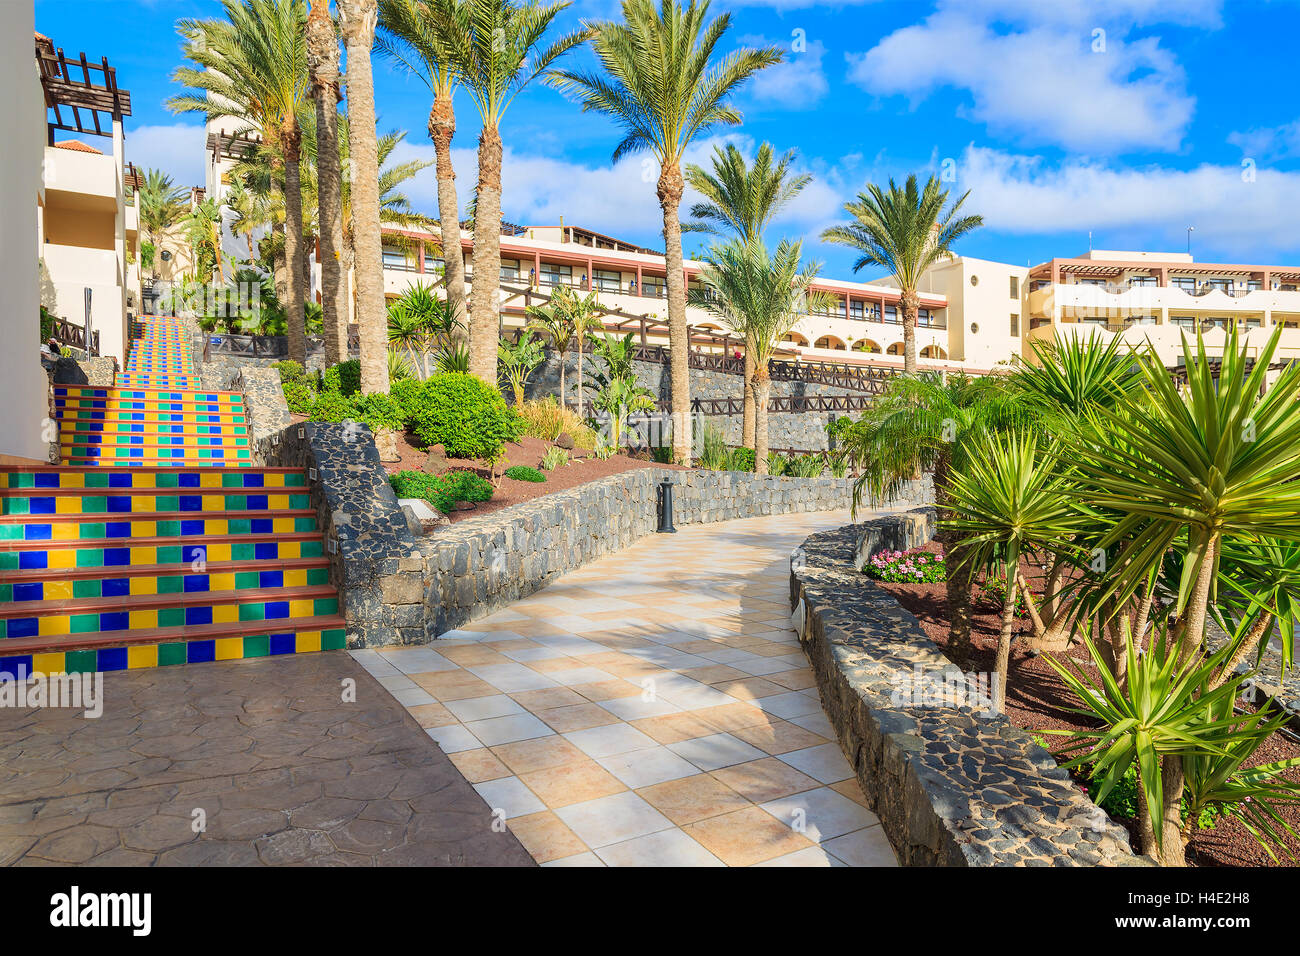 MORRO Jable Fuerteventura - 6 FEB 2014: a piedi vicolo in giardini tropicali di luxury hotel Barcelo Jandia Mar. Questa è una popolare meta di vacanza per i turisti sull isola di Fuerteventura. Foto Stock